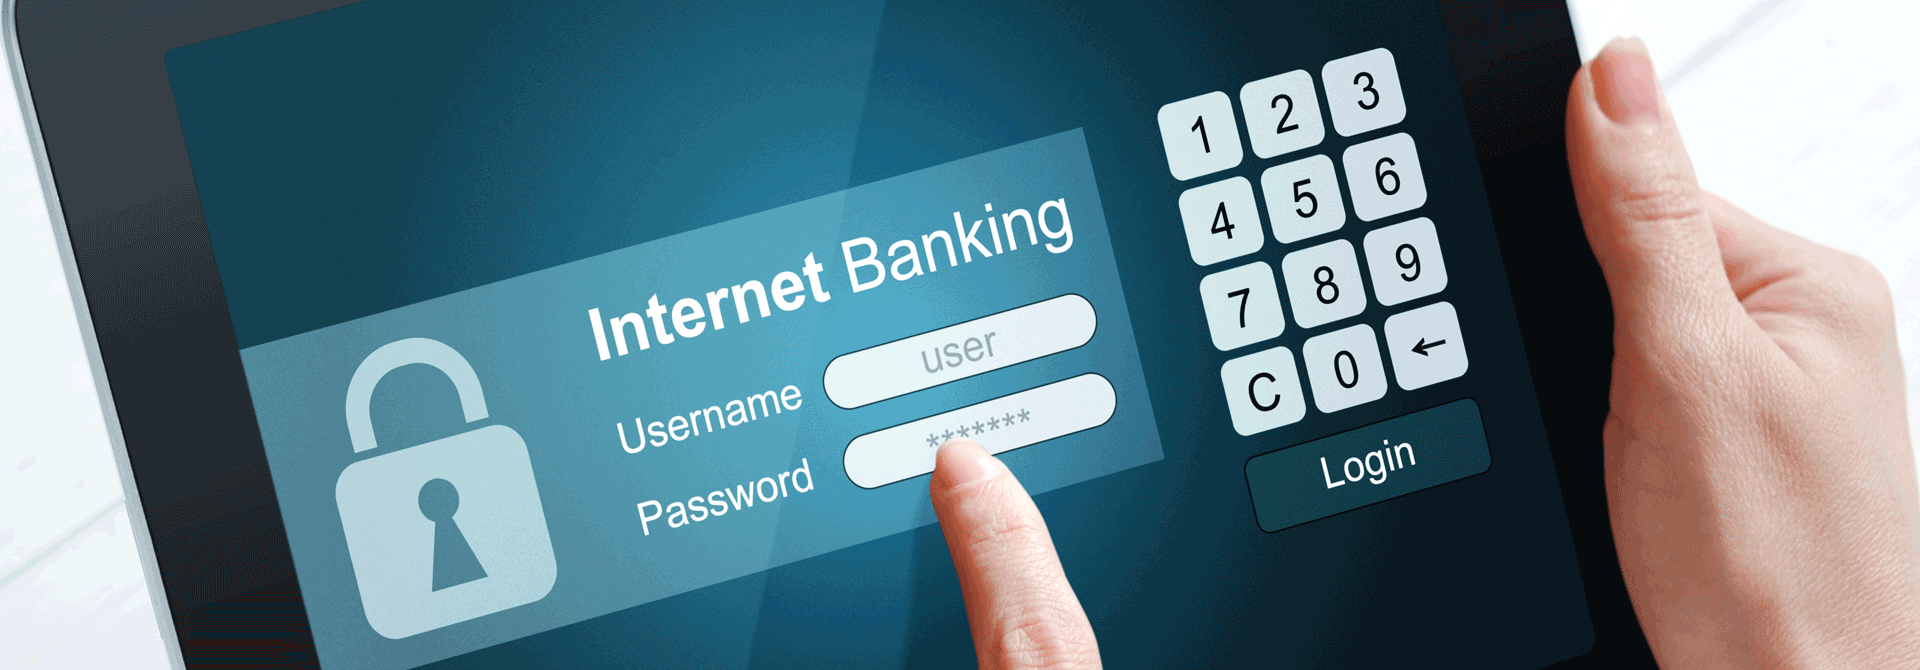 क्या है इंटरनेट बैंकिंग, कितने प्रकार से होती है..?